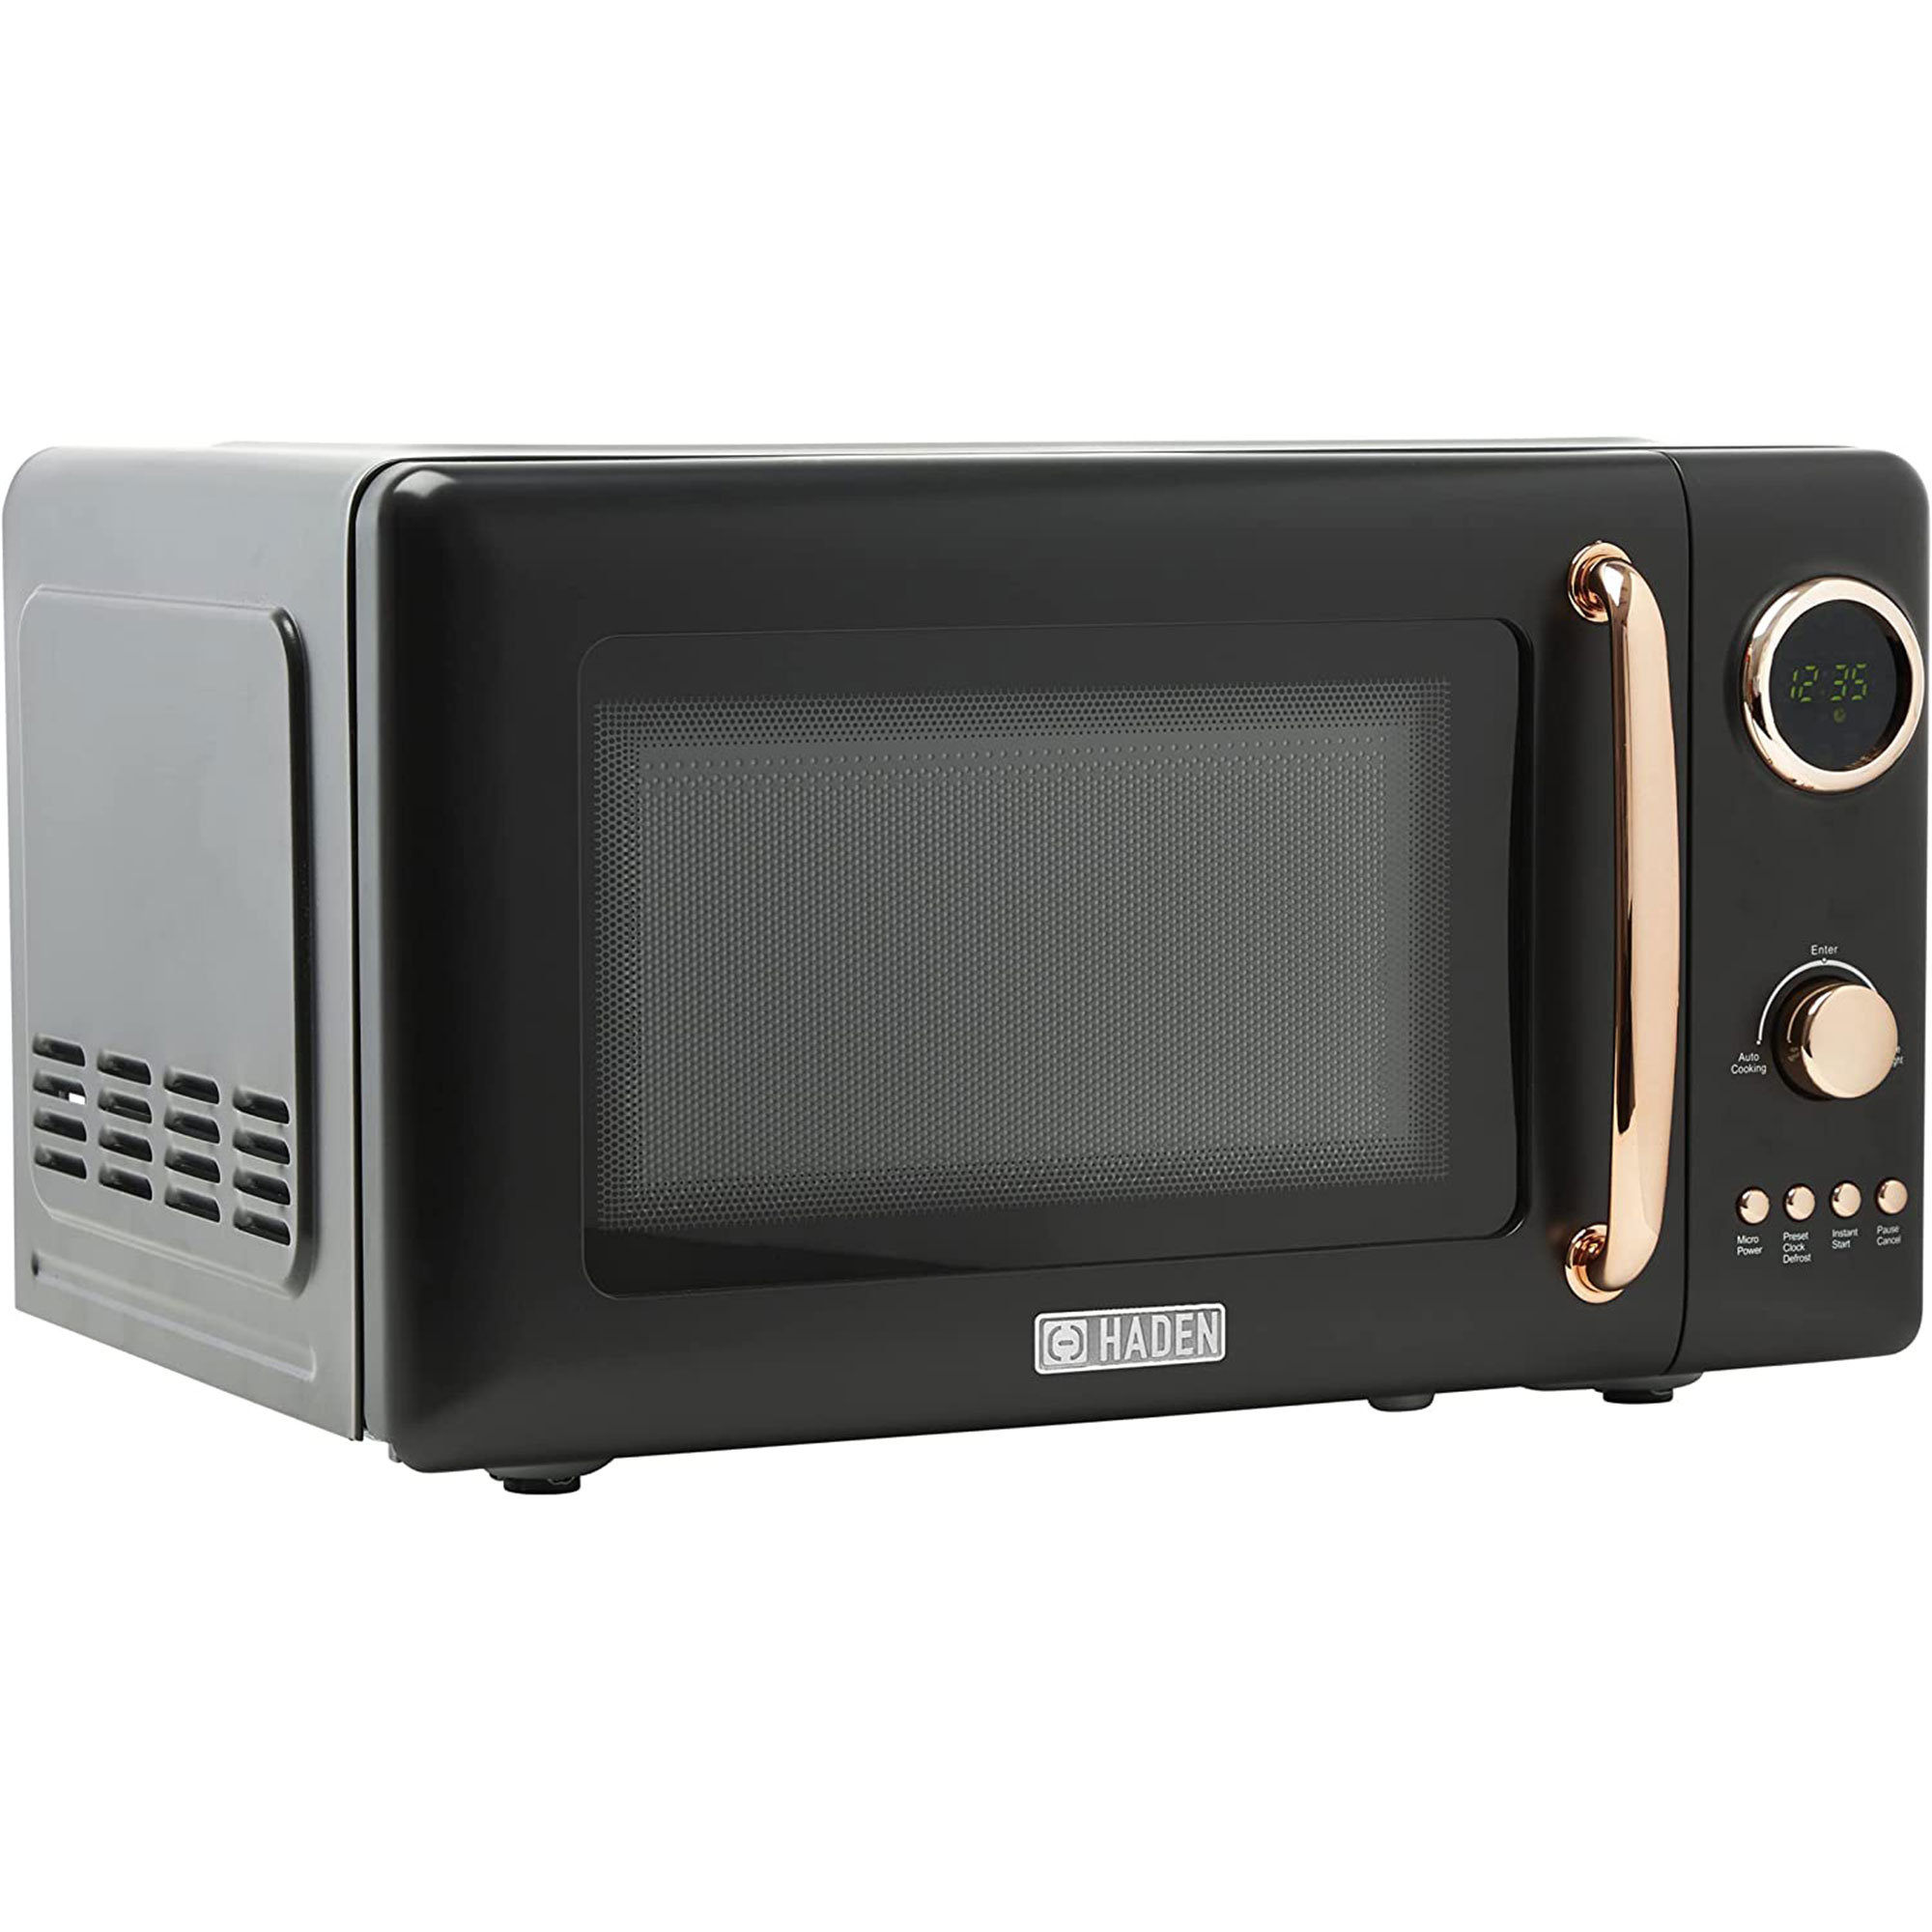 https://assets.wfcdn.com/im/74275055/compr-r85/2487/248703621/haden-07-cubic-feet-countertop-microwave.jpg